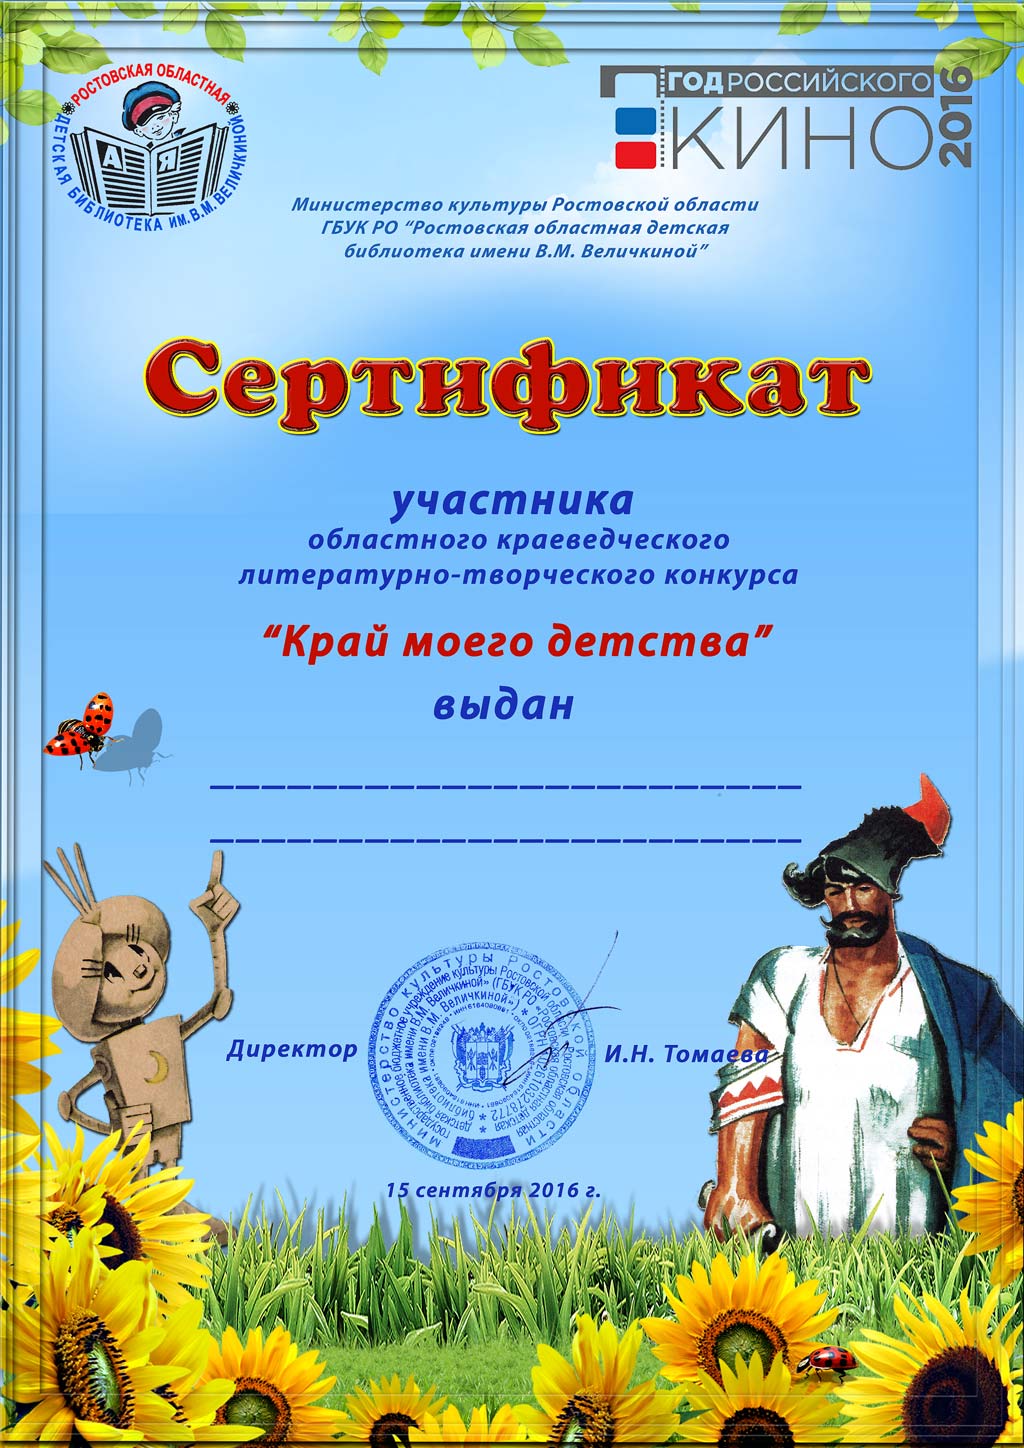  Сертификат участника литературно творческого конкурса Край моего детства 